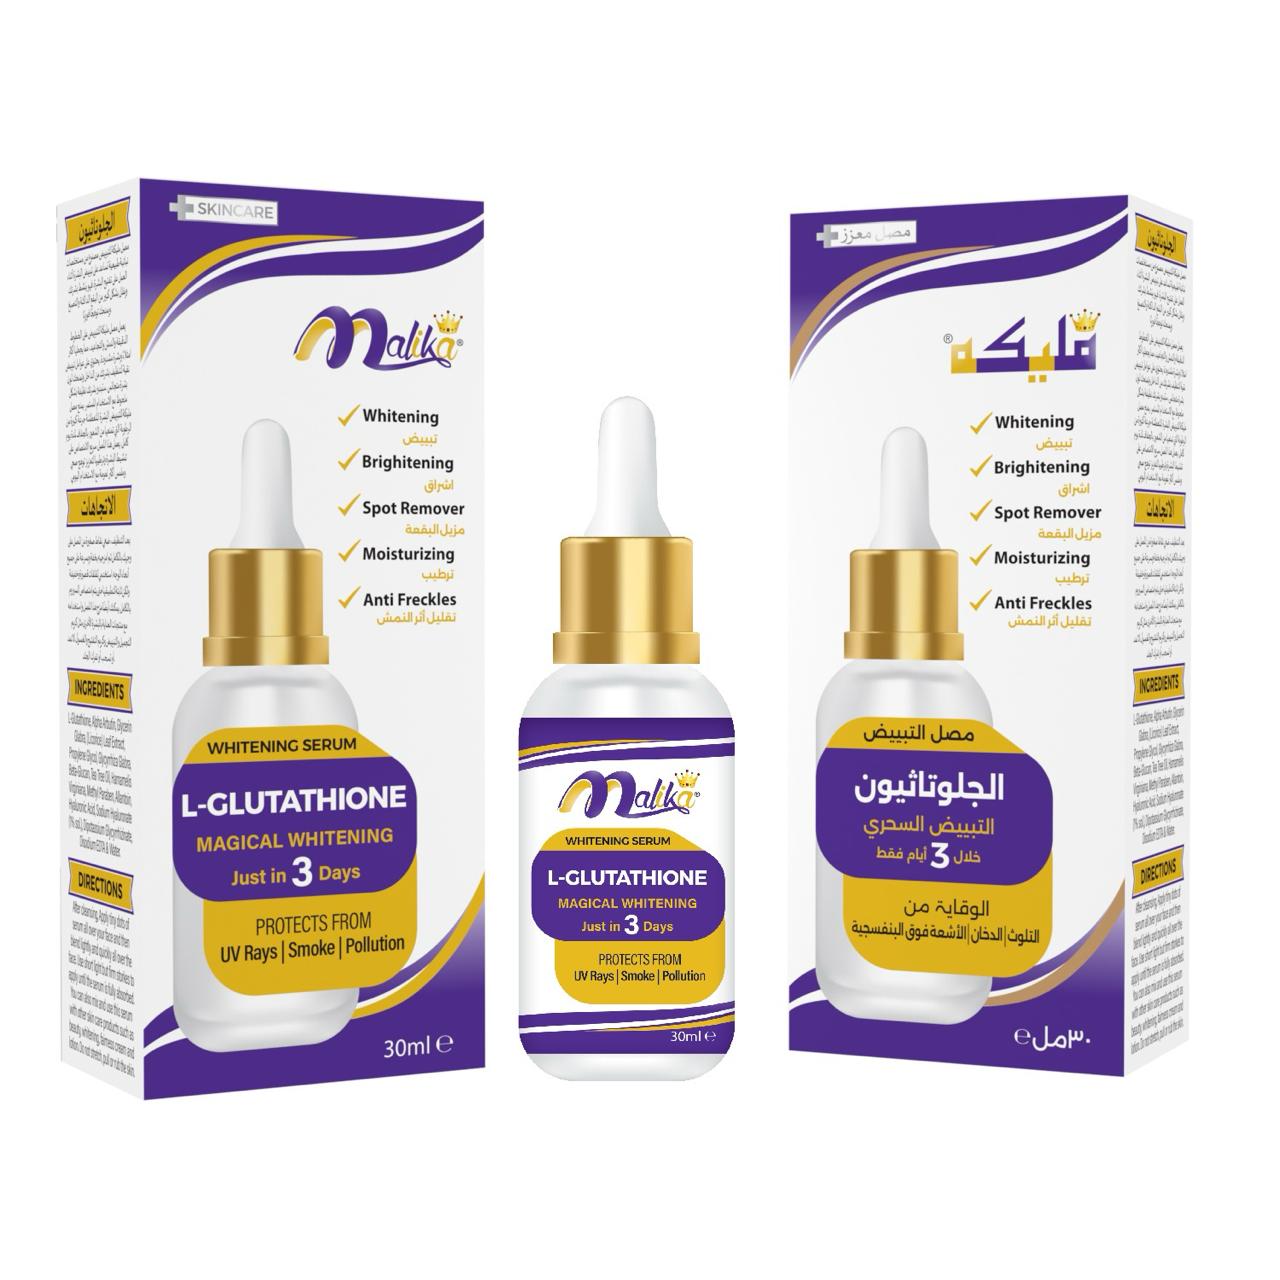 Malika L-Glutathione Whitening Serum 30ml